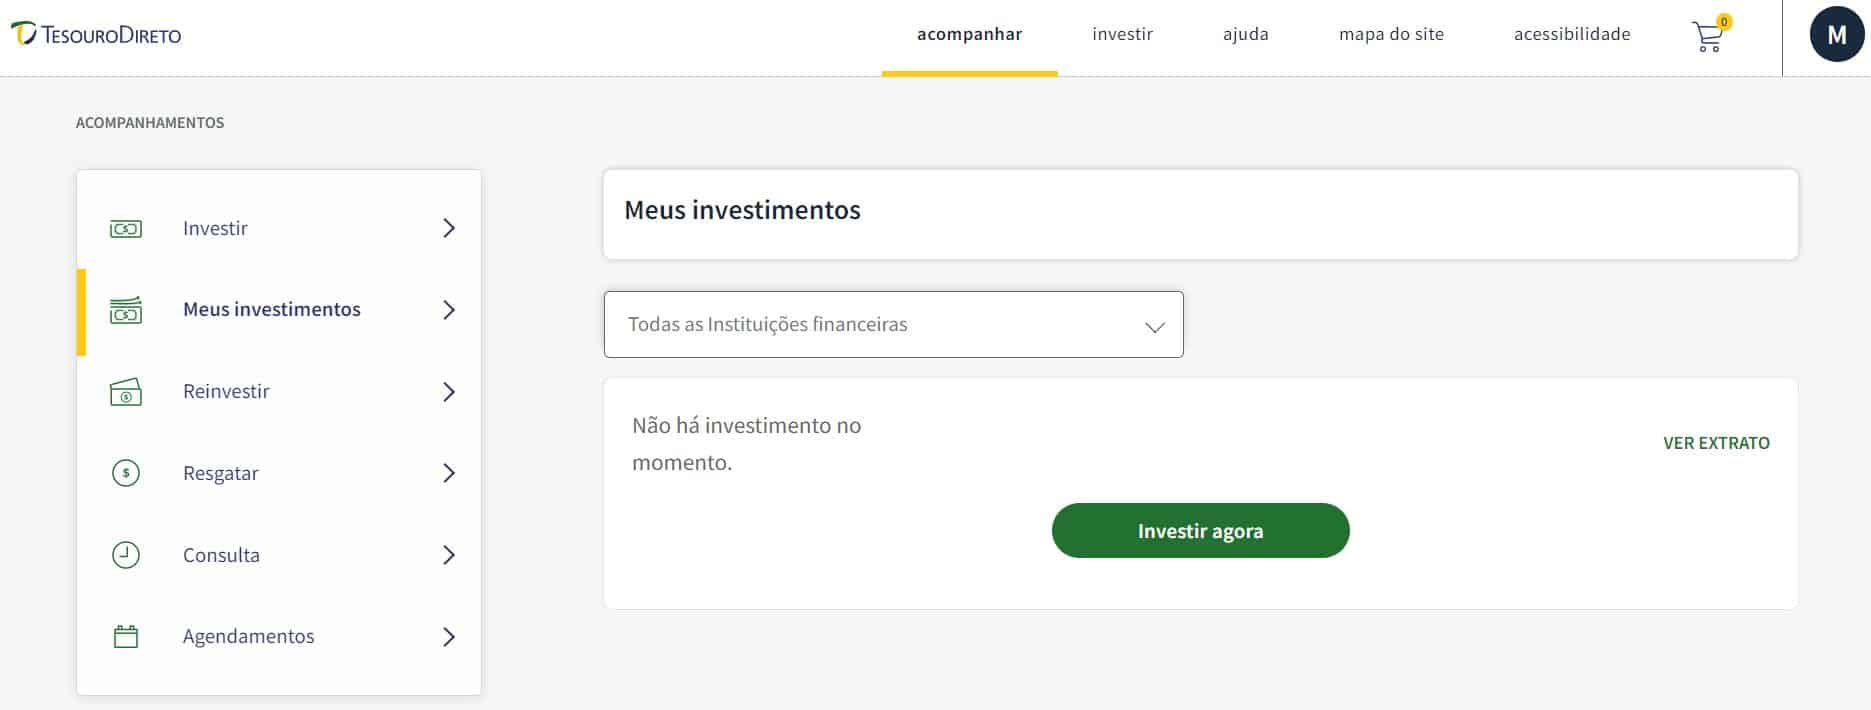 captura de tela do portal do investidor mostrando a opção de investir